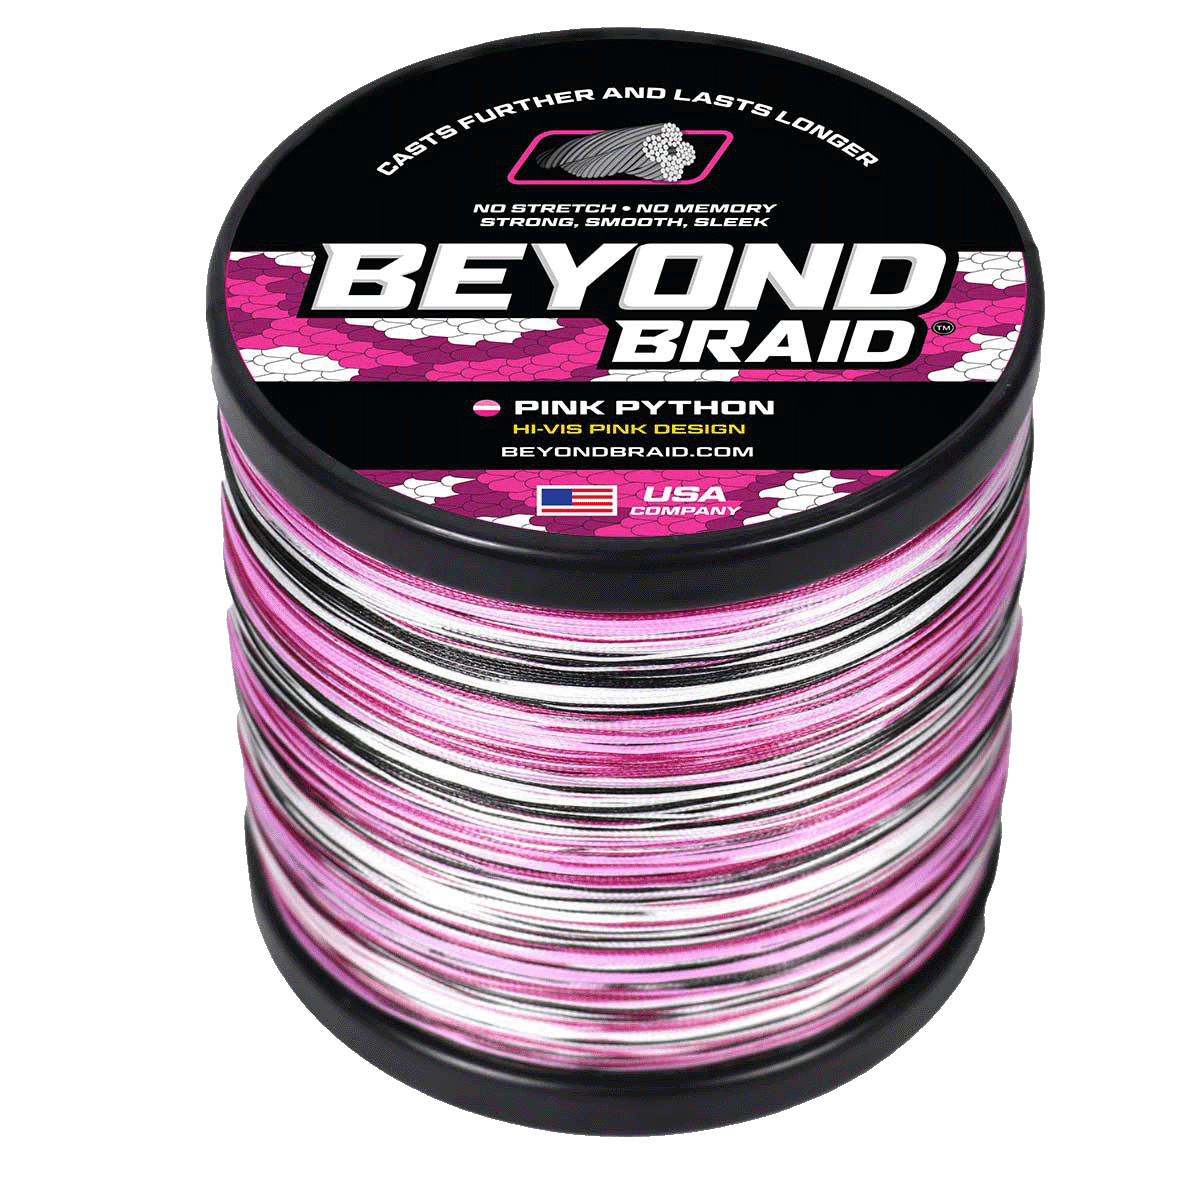 Beyond Braid - Braided Fishing Line Fishing Line Beyond Braid 